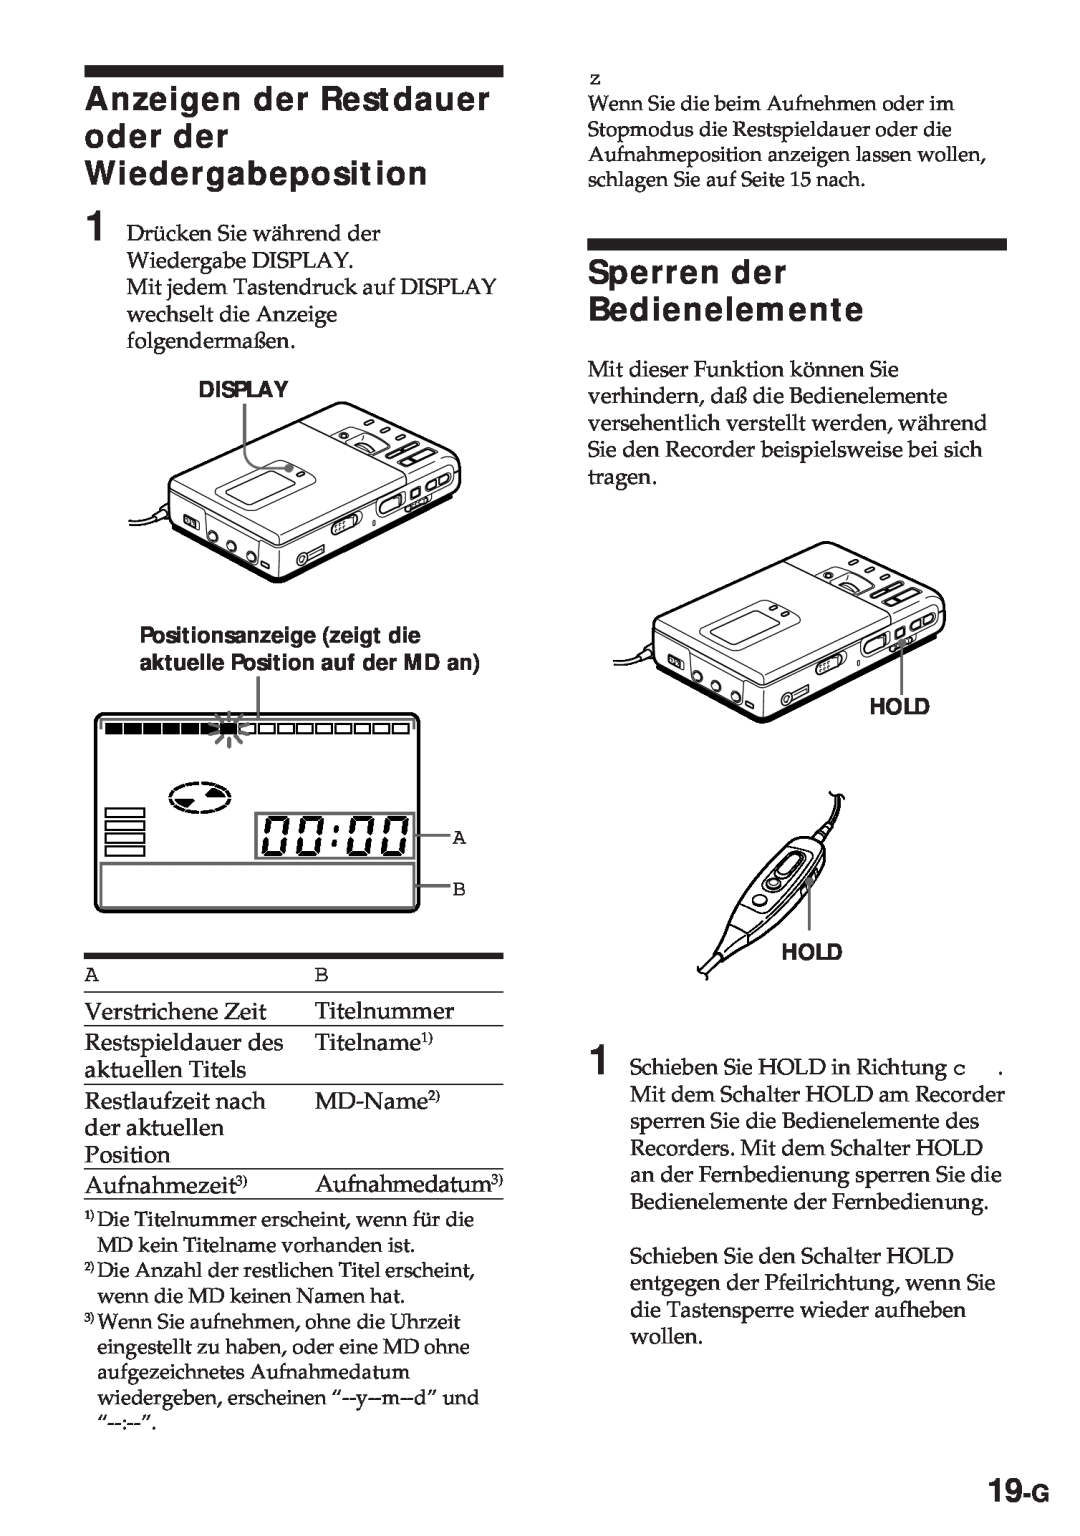 Sony MZ-R30 operating instructions Anzeigen der Restdauer oder der Wiedergabeposition, Sperren der Bedienelemente, 19-G 